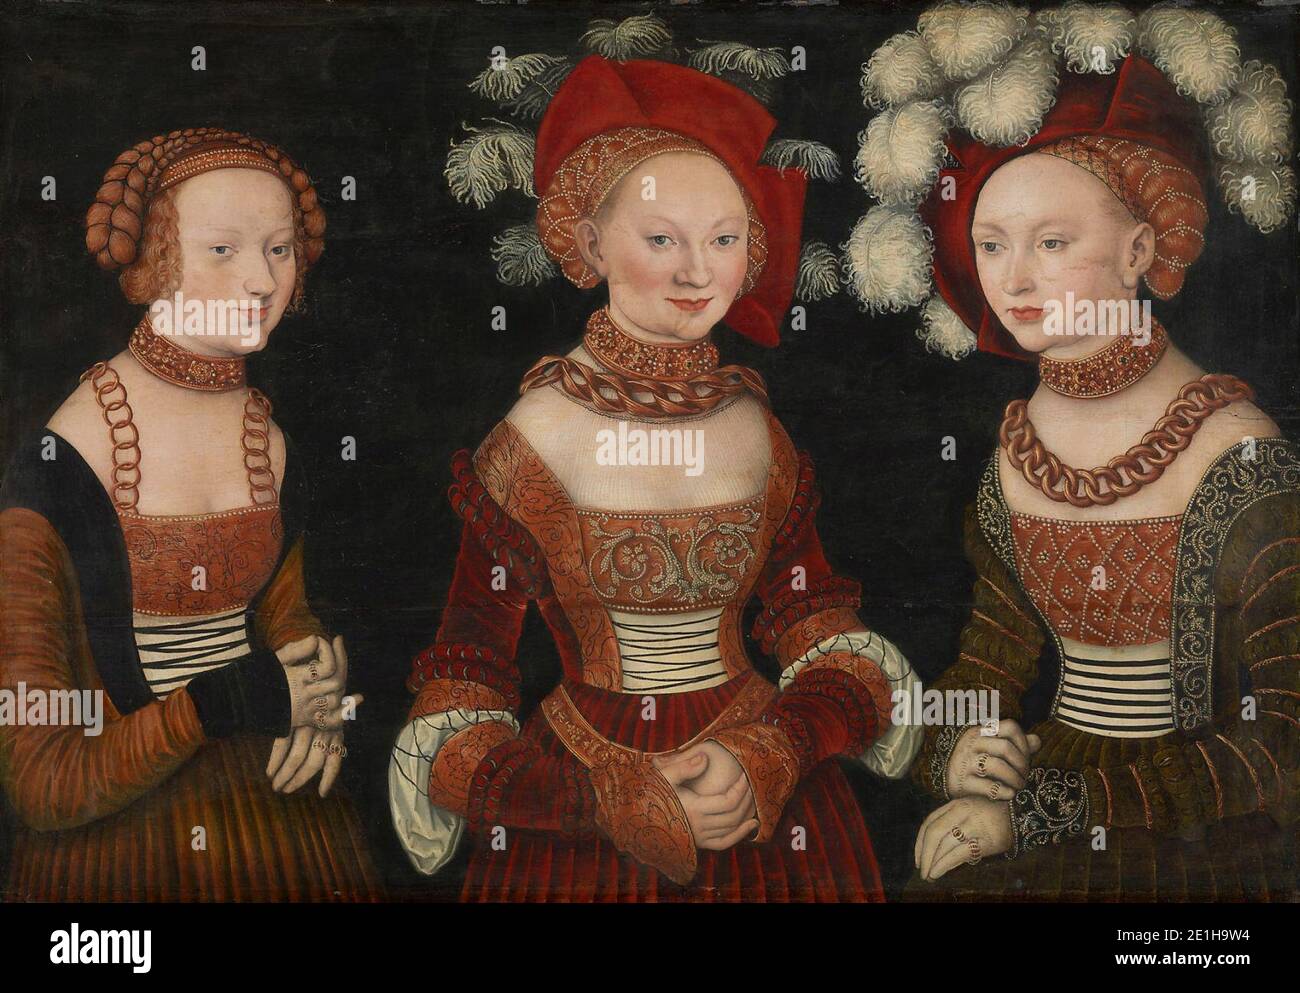 Lucas Cranach d. Ä. - Die Prinzessinnen Sibylla (1515-1592), Emilia (1516-1591) und Sidonia (1518-1575) von Sachsen Stock Photo